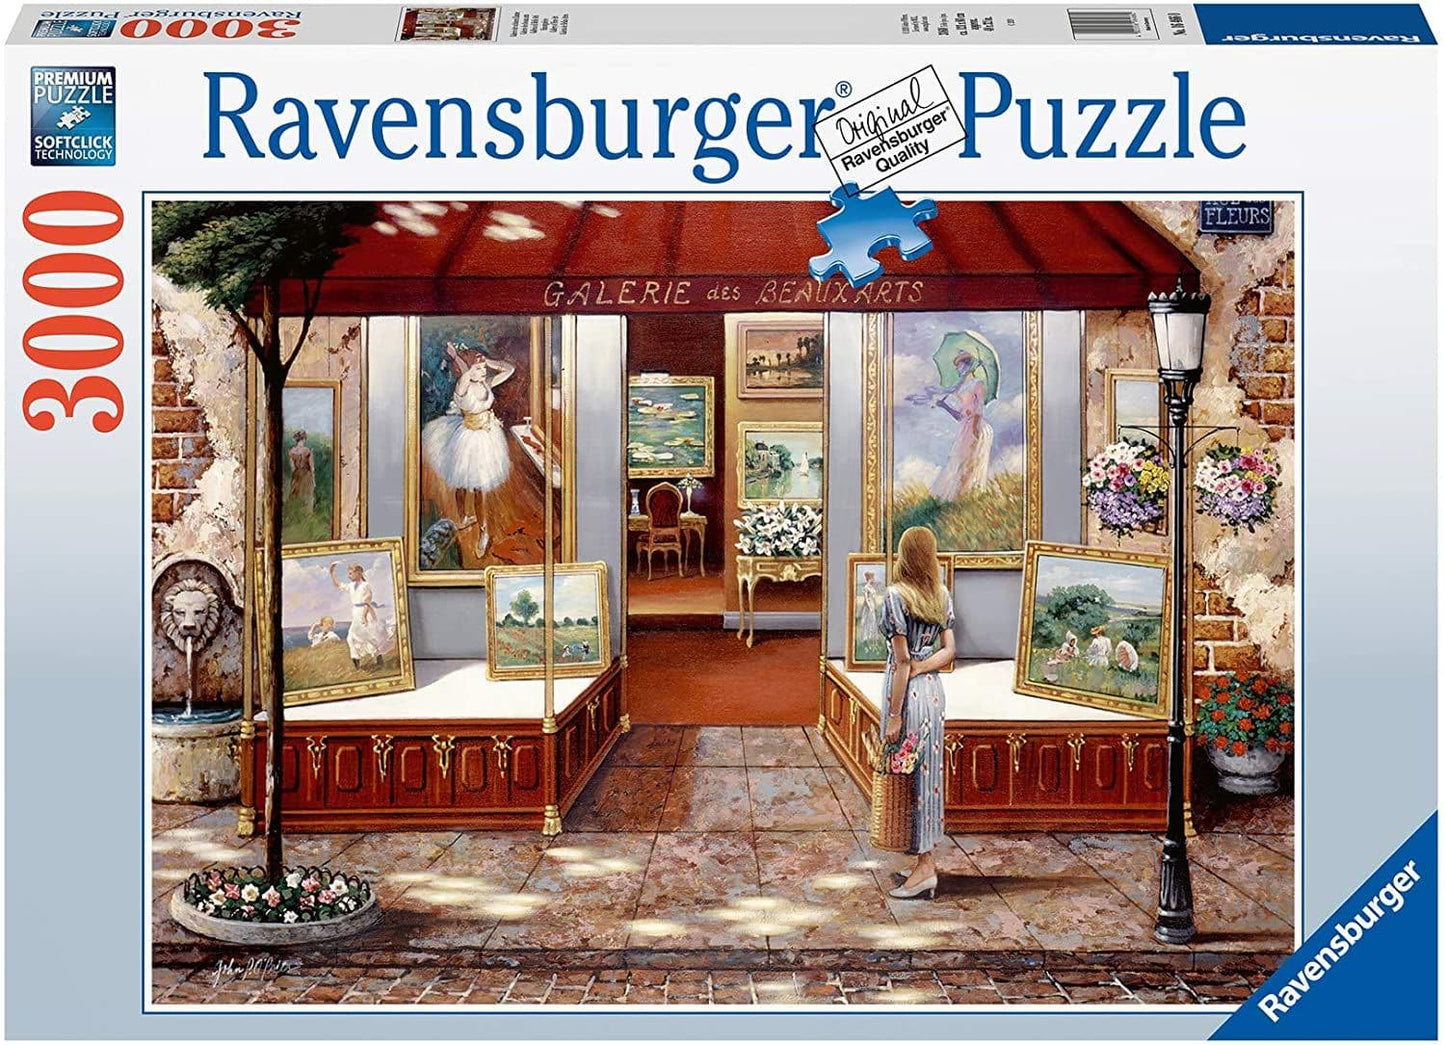 Ravensburger Vintage Paris 1500 Piece Puzzle – The Puzzle Collections